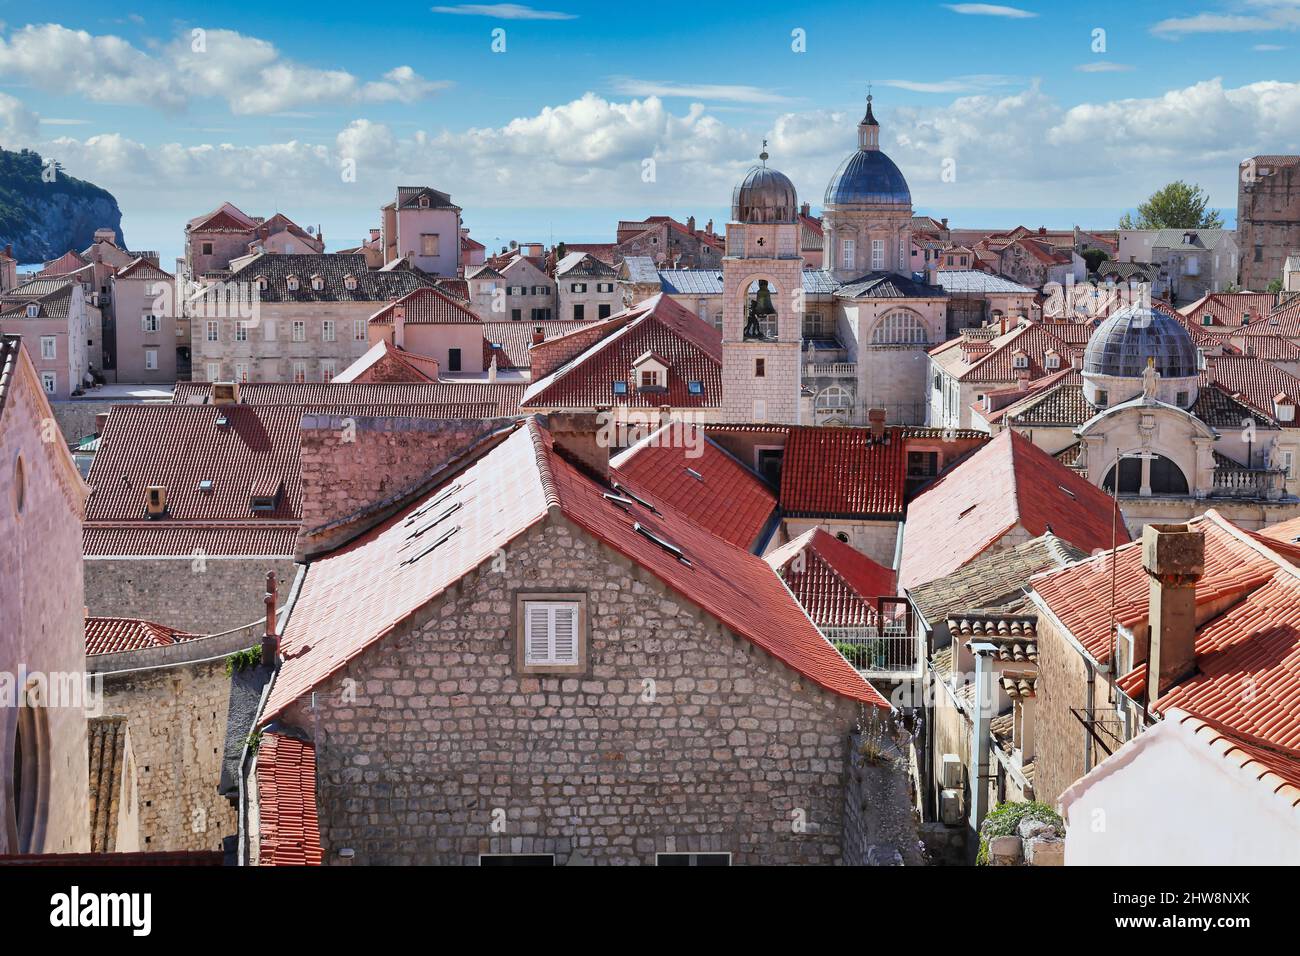 Dubrovnik, Croatie - vue aérienne depuis le mur de la ville sur les toits rouges en terre cuite de la vieille ville jusqu'à la mer Adriatique Banque D'Images